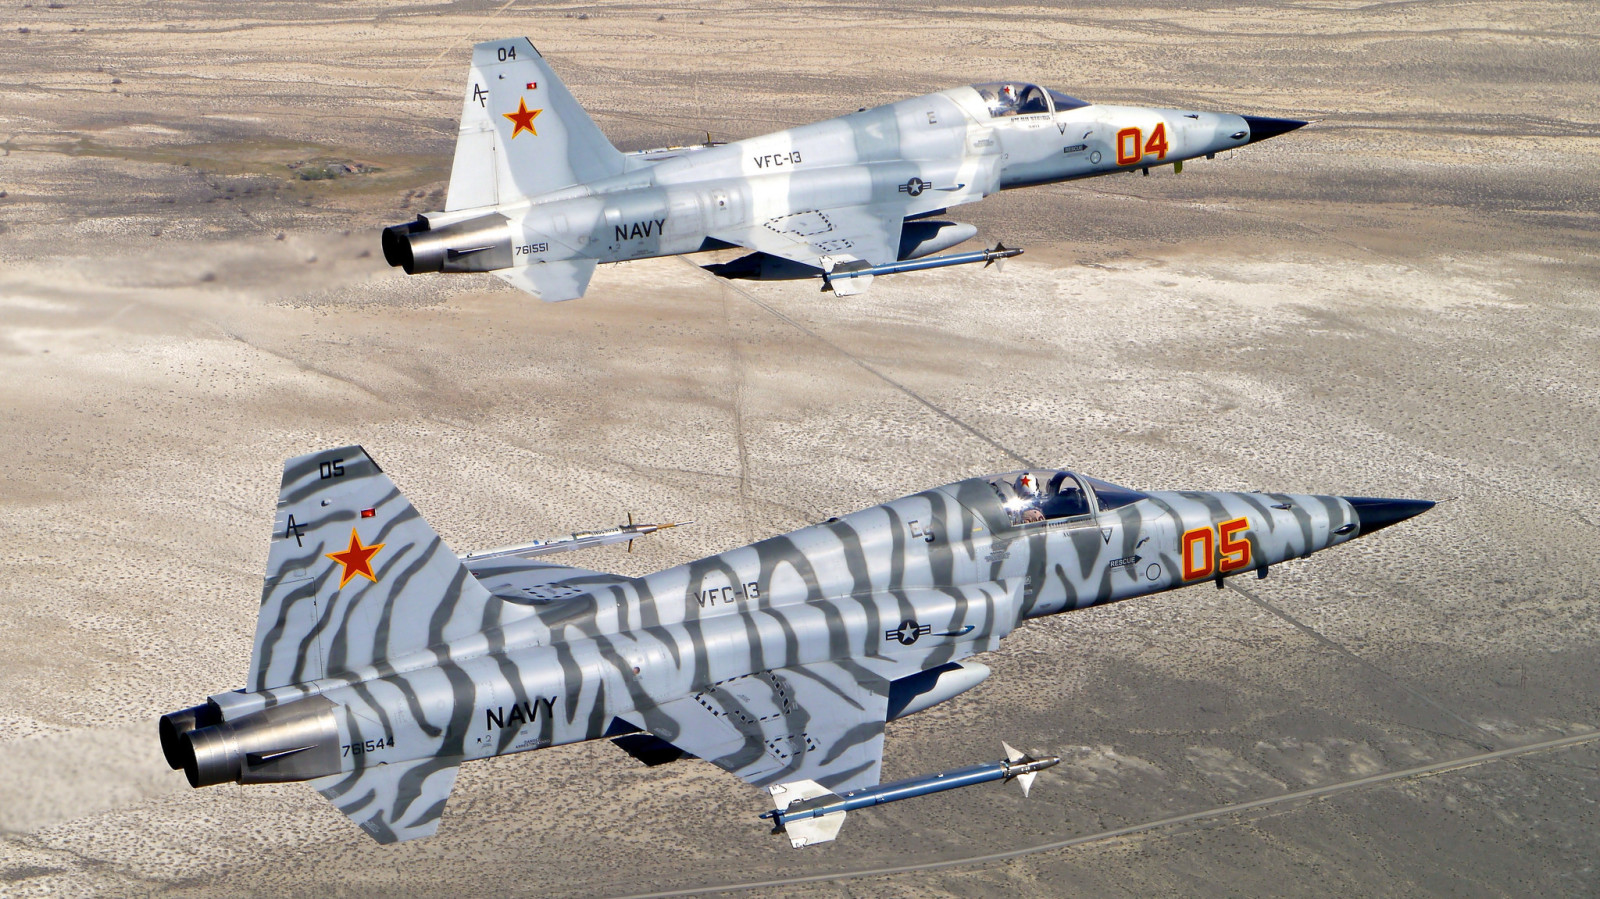 penerbangan, Pejuang, Harimau II, Serba guna, "Pejuang kebebasan", Northrop F-5